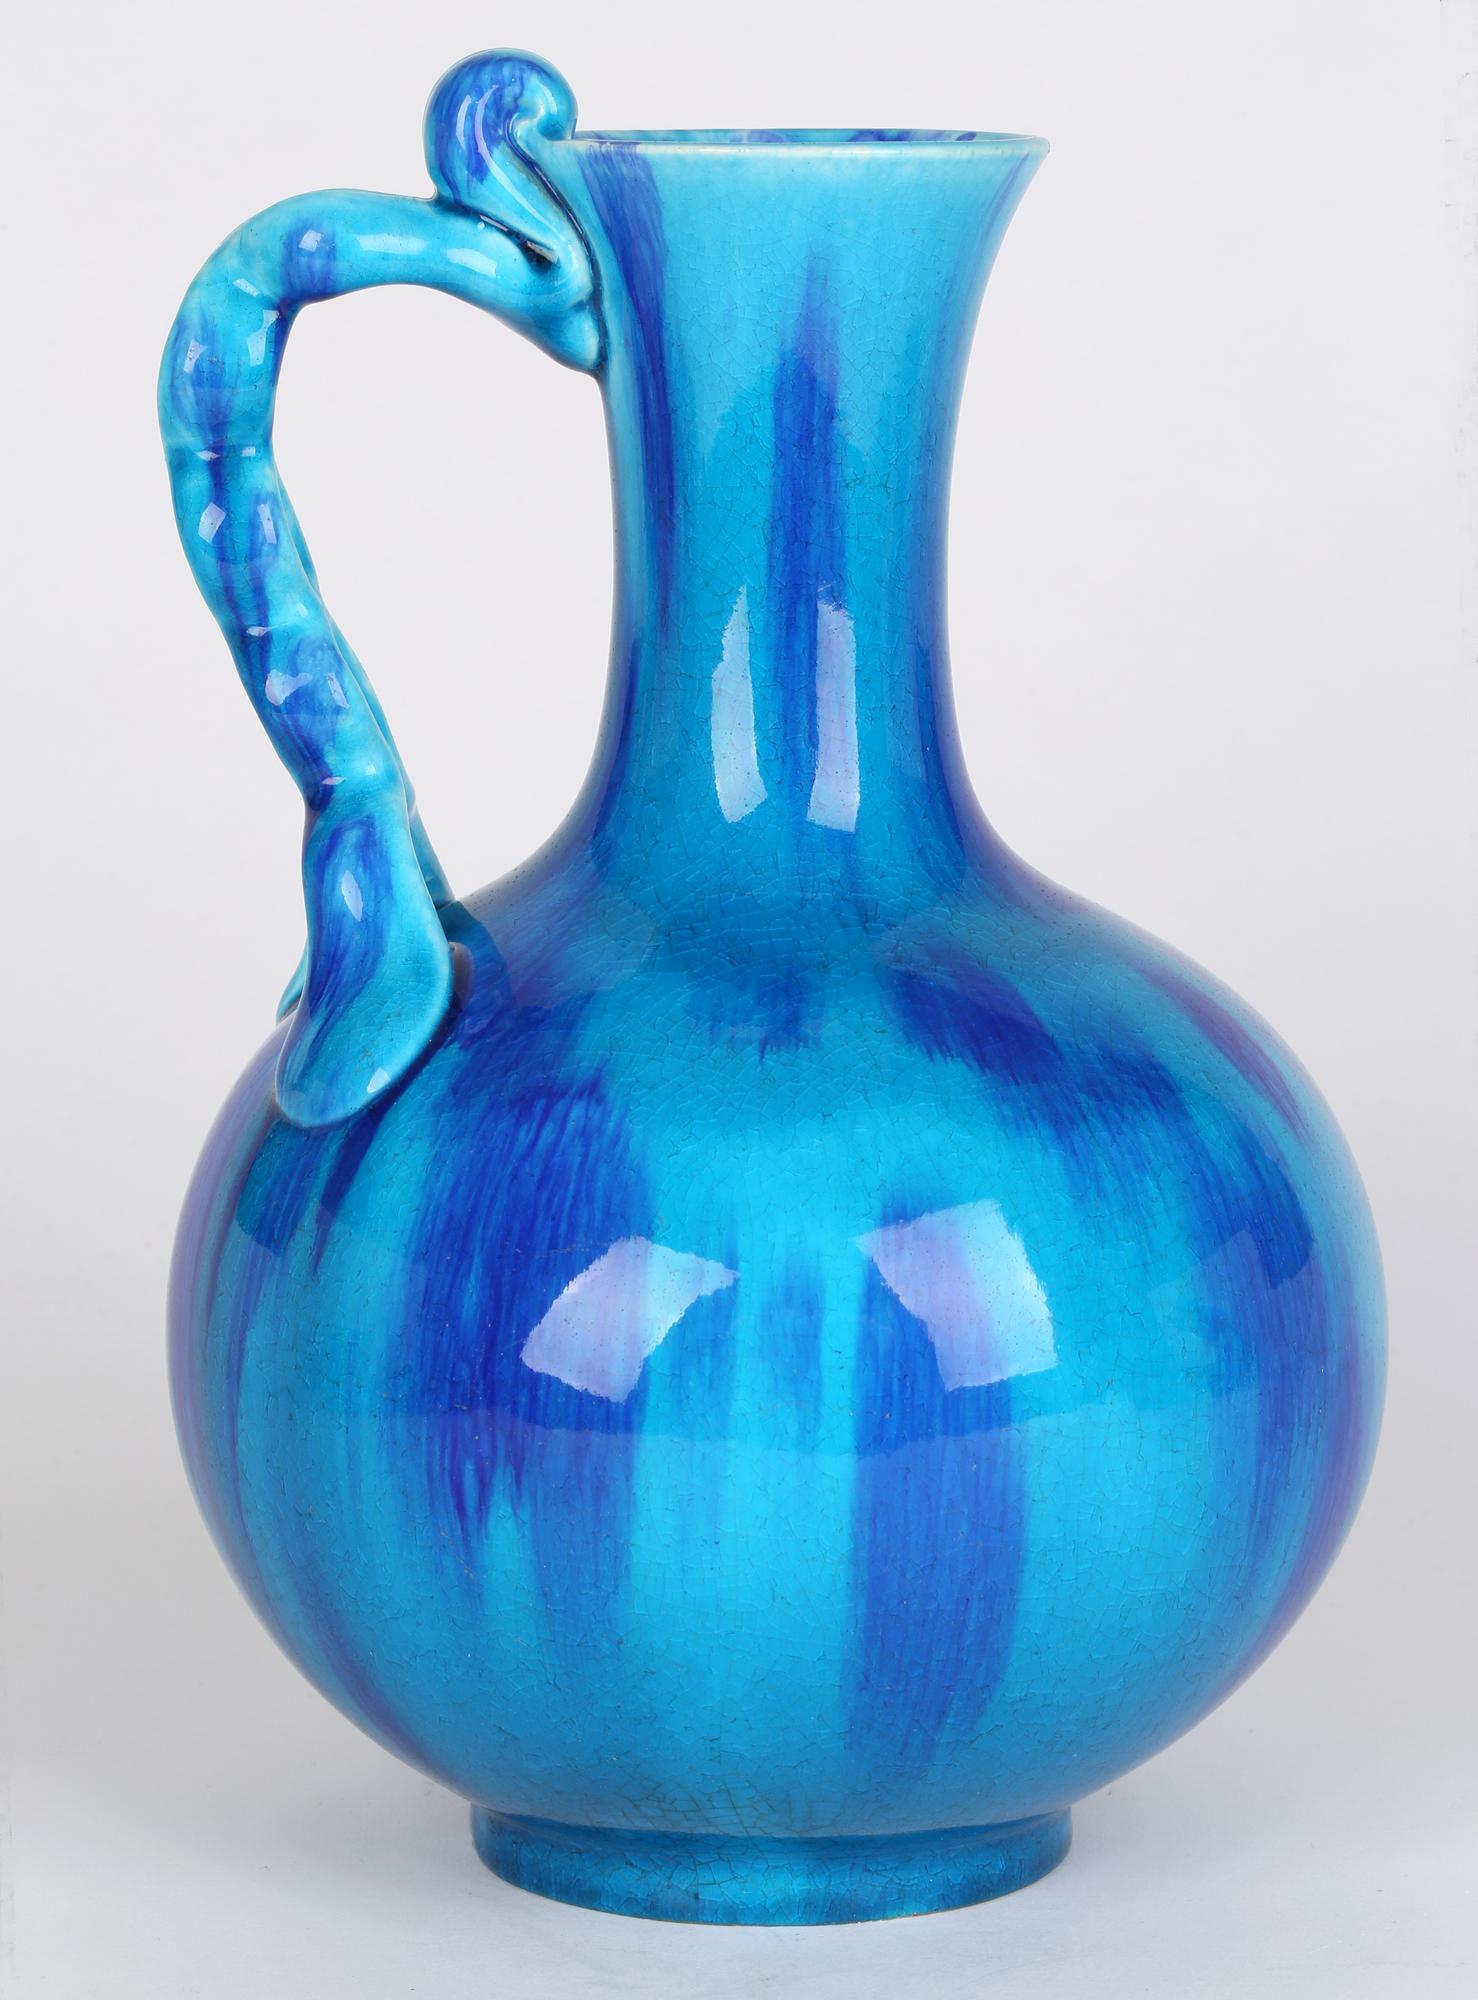 Minton Aesthetic Movement Blue & Turquoise Glazed Handled Art Pottery Vase 1